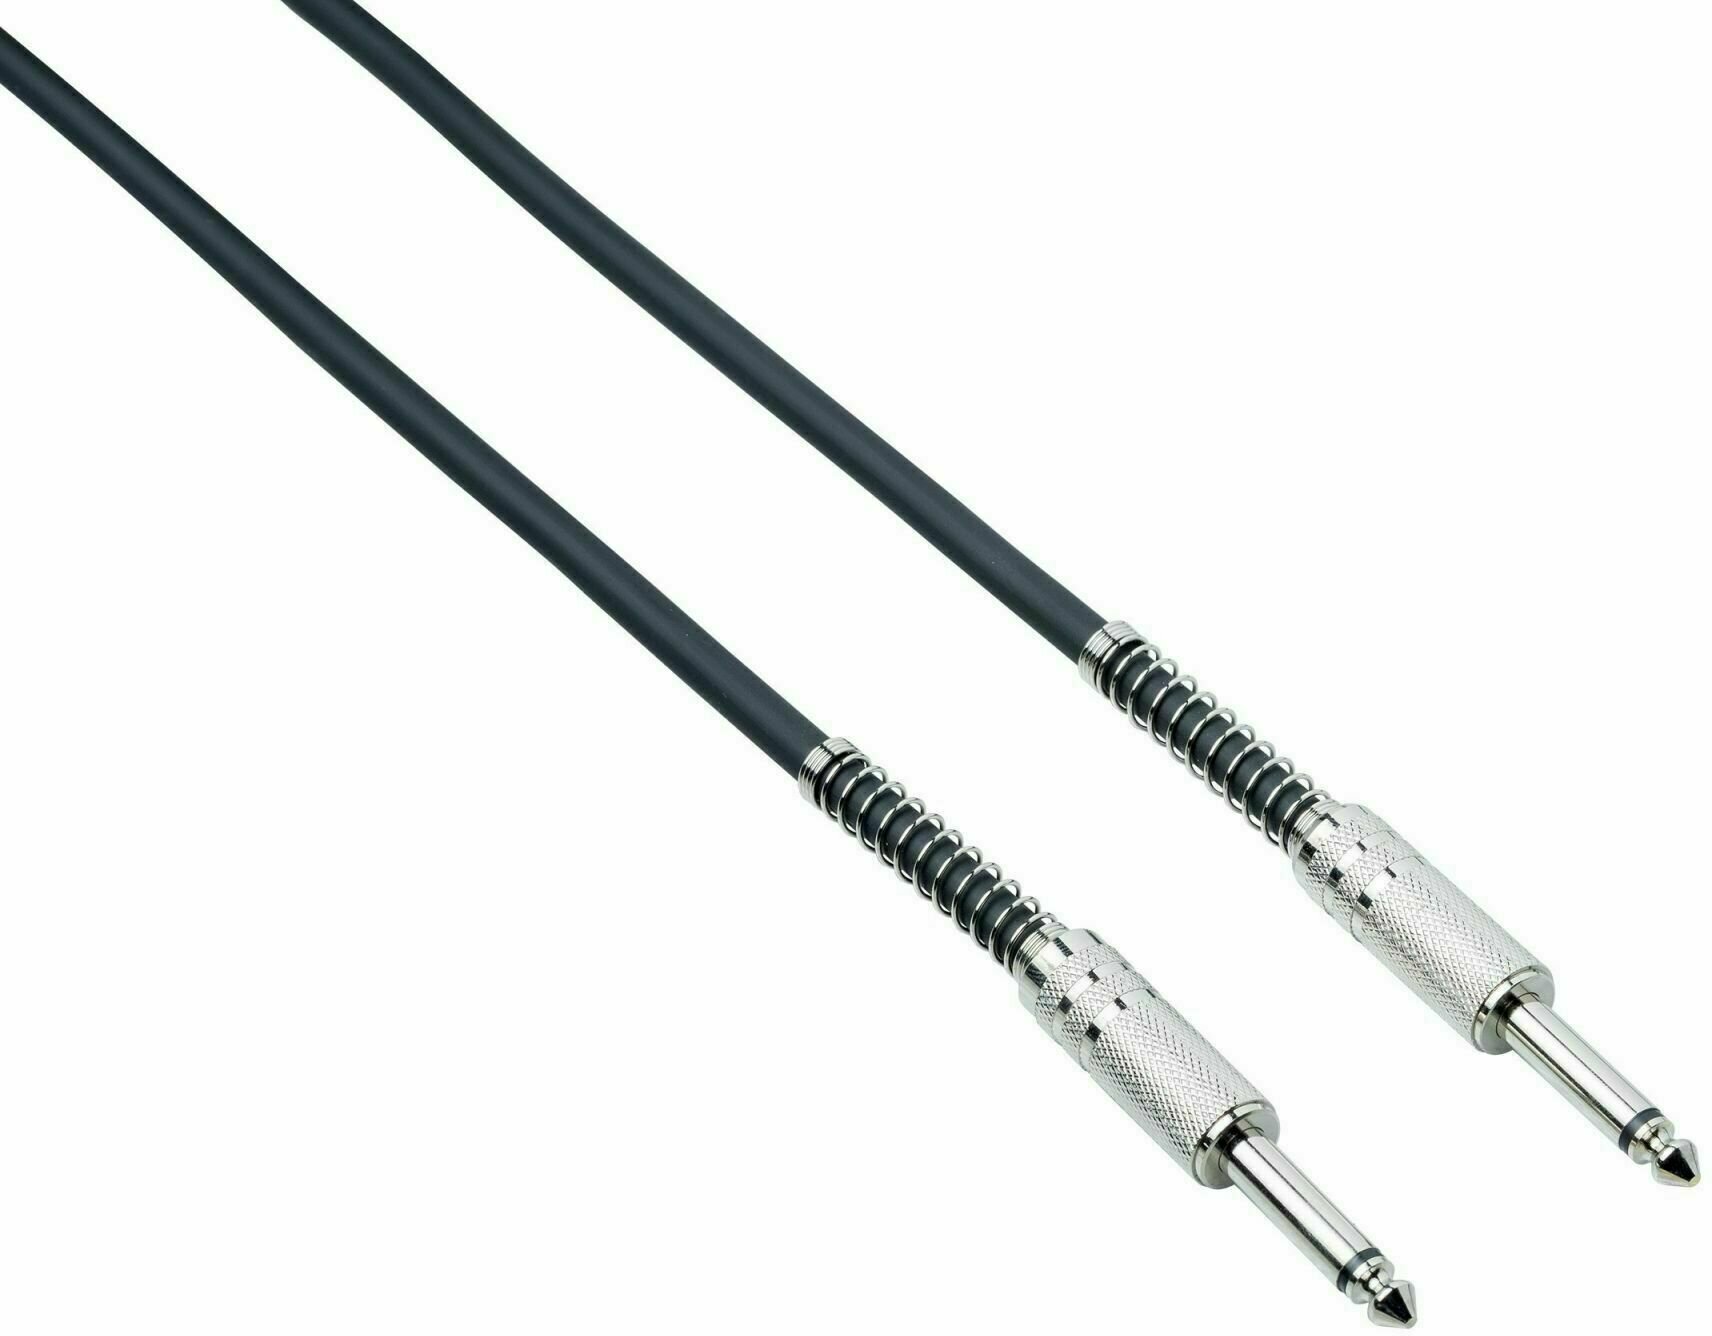 Kabel rozgałęziacz, Patch kabel Bespeco IRO 30 Czarny 30 cm Prosty - Prosty